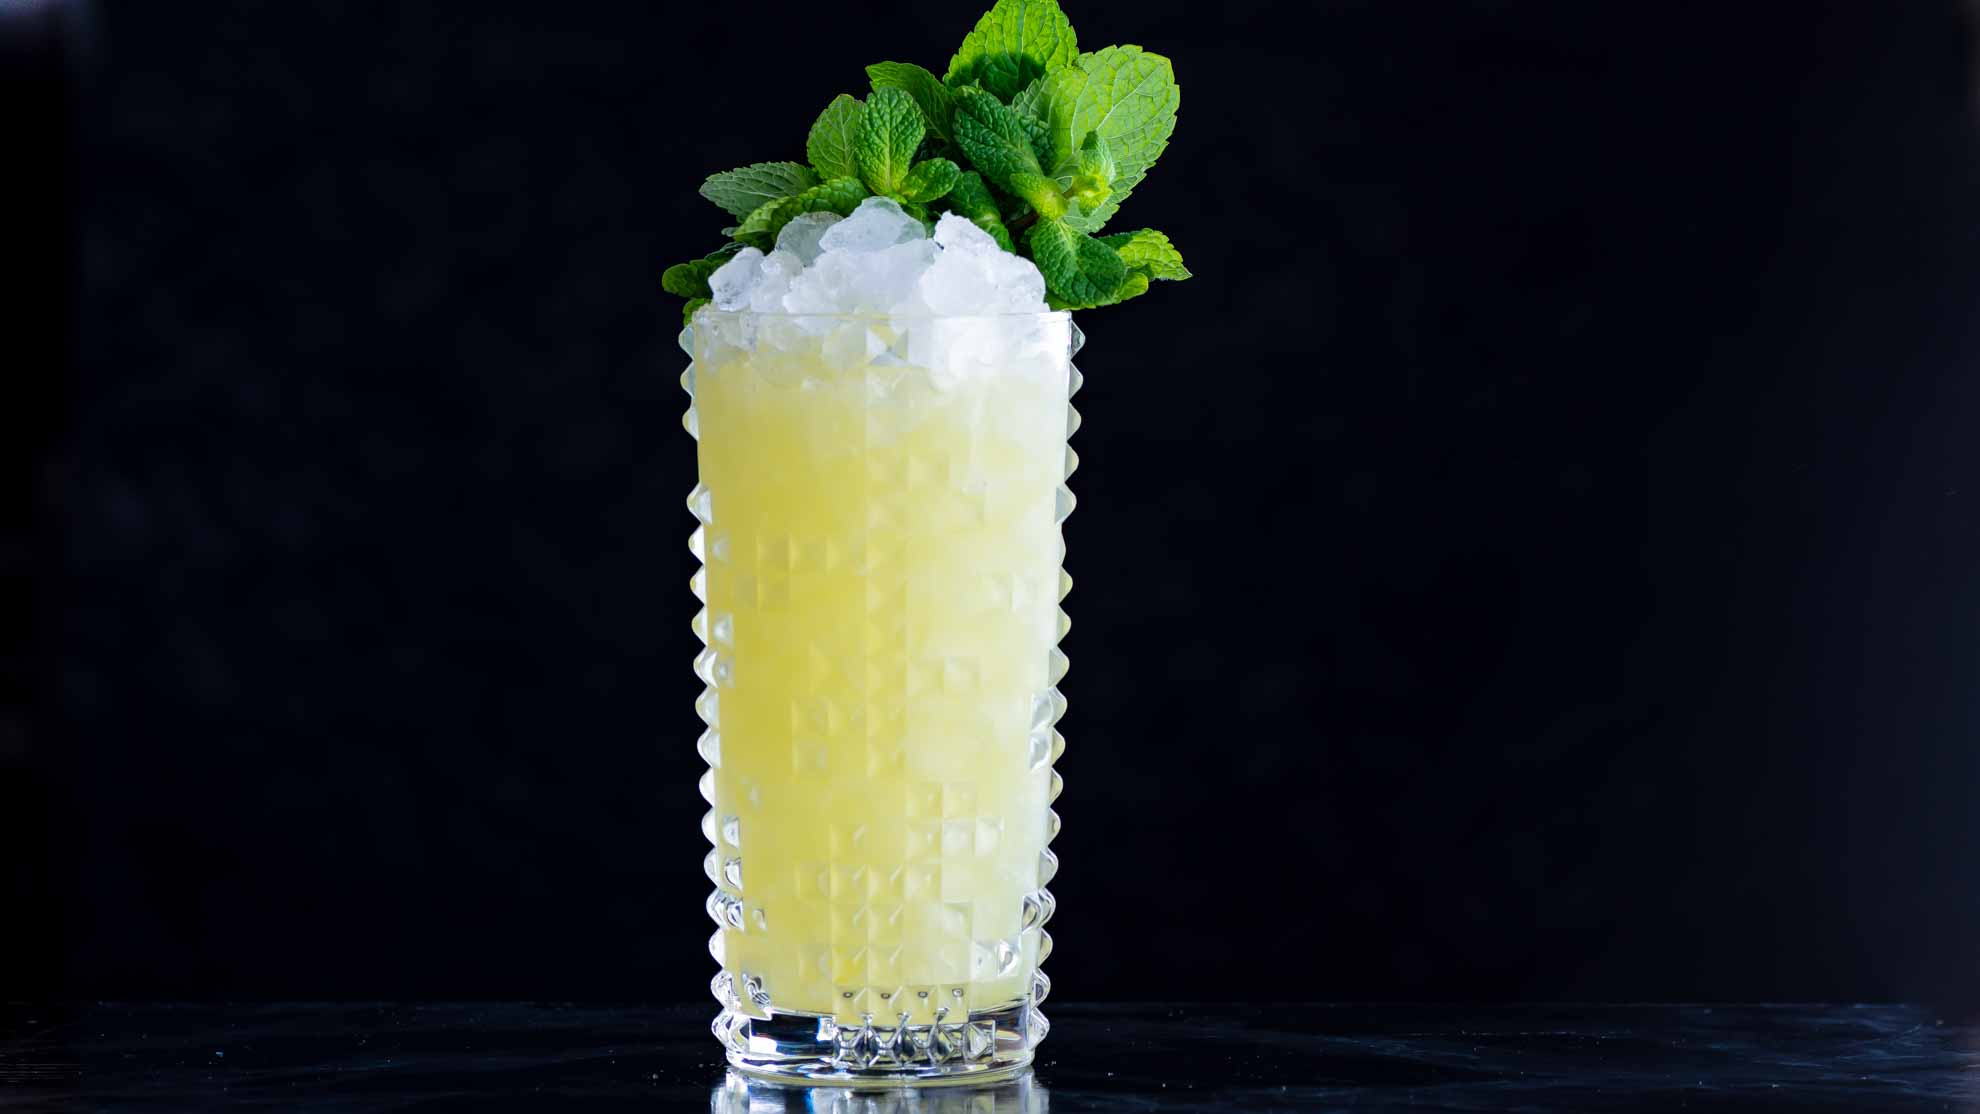 Der Chartreuse Swizzle Cocktail mit Chartreuse, Falernum und Ananassaft.